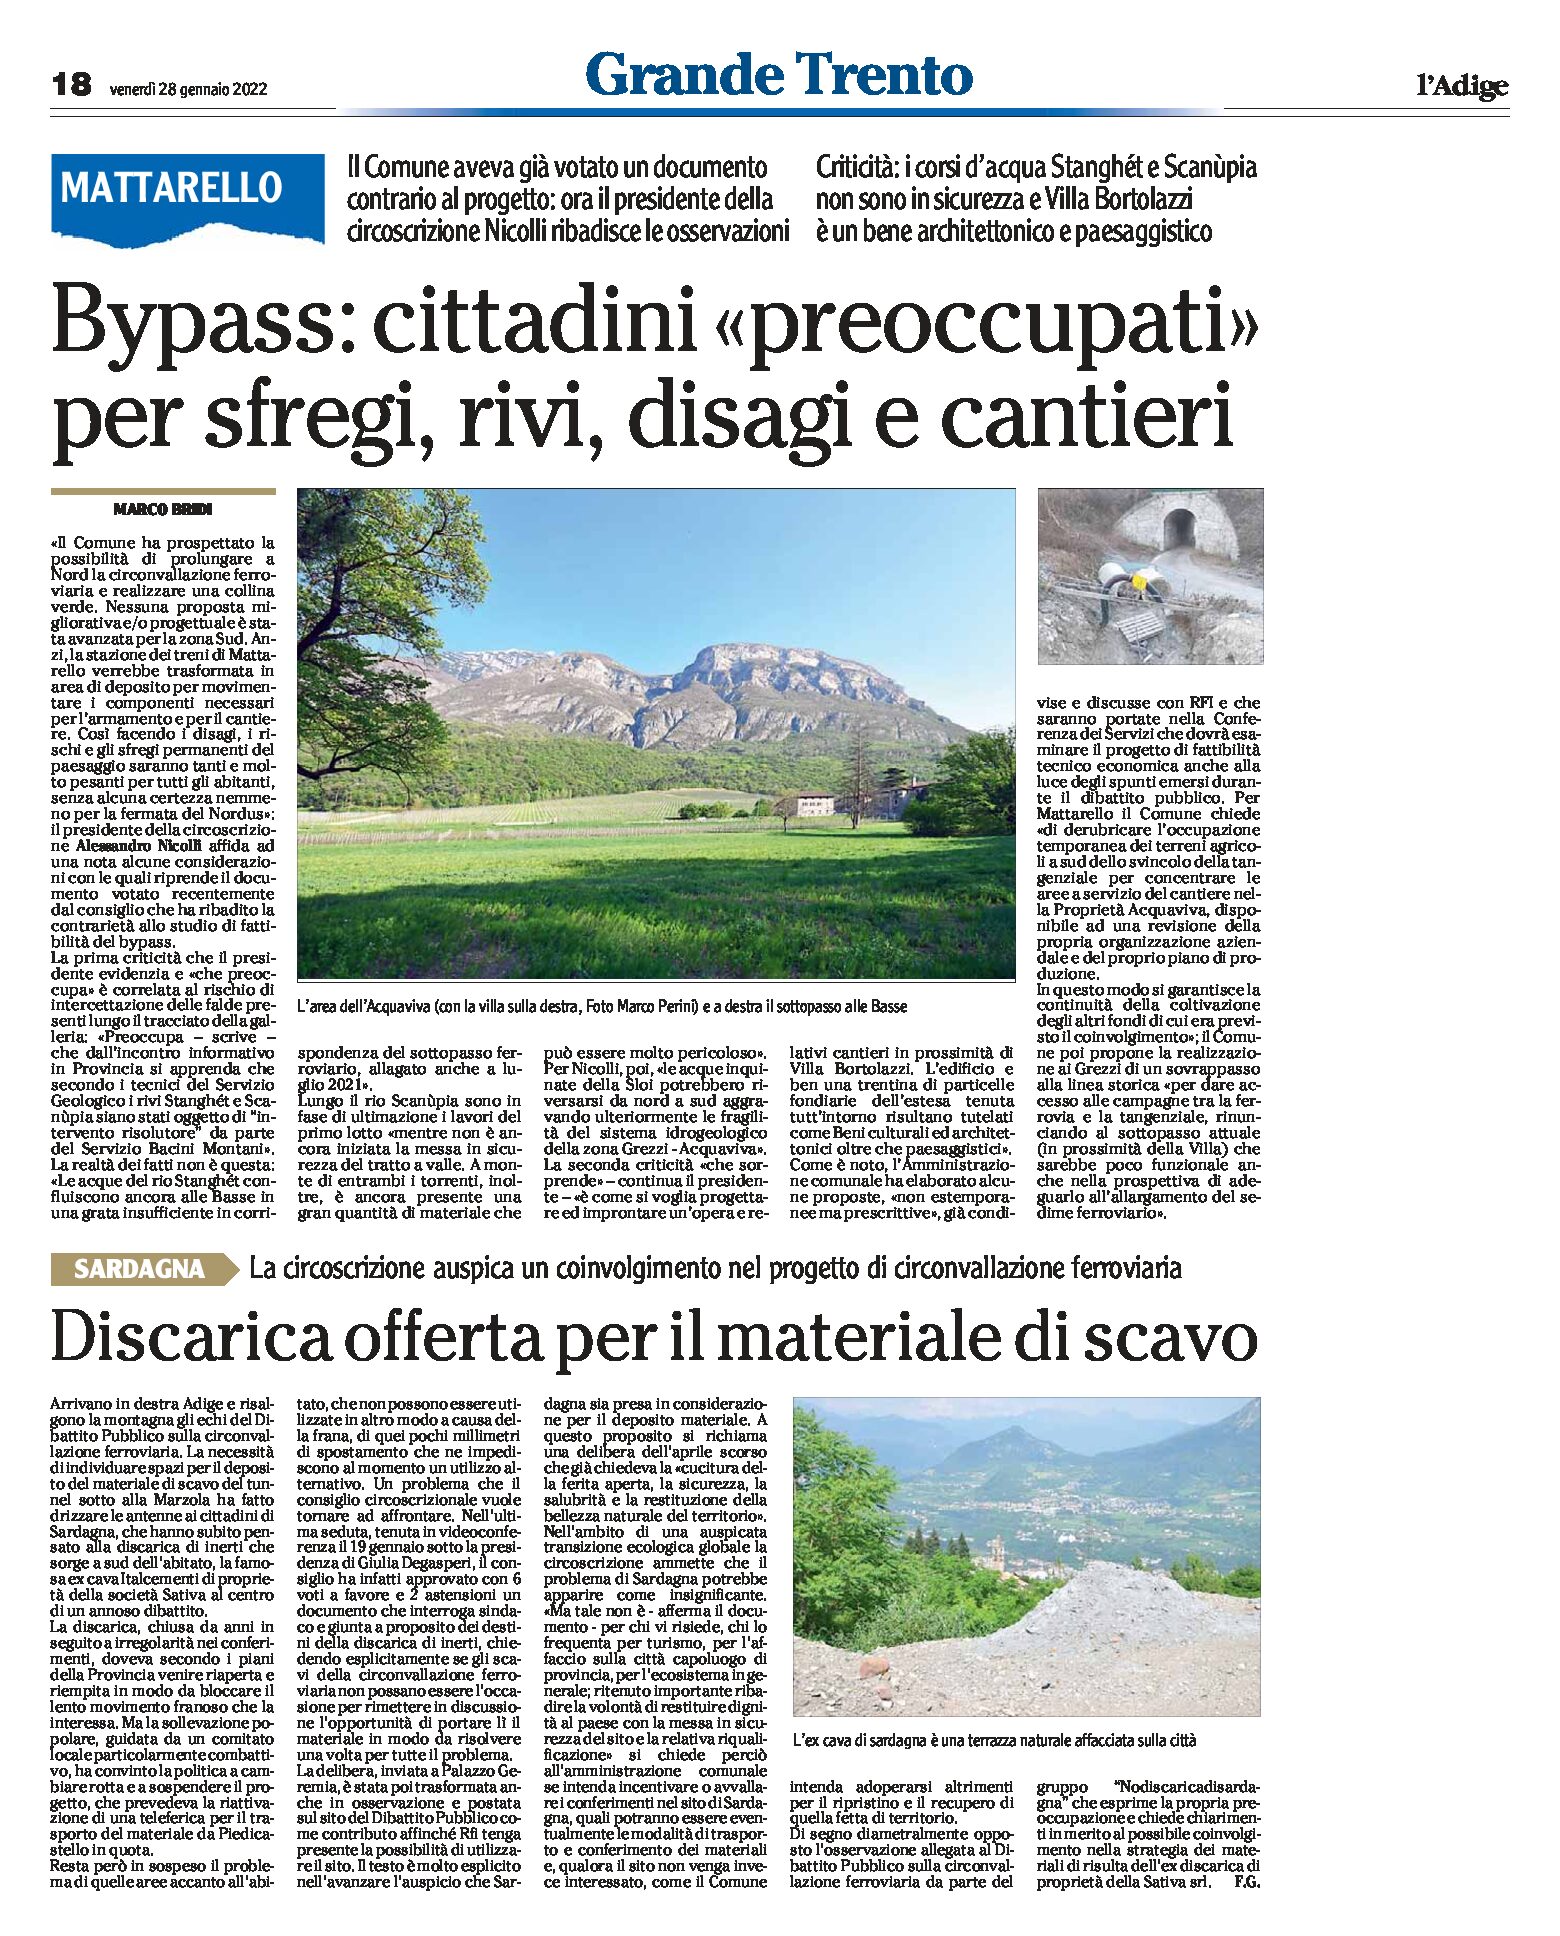 Trento, bypass: a Mattarello i cittadini preoccupati per sfregi, rivi, disagi e cantieri